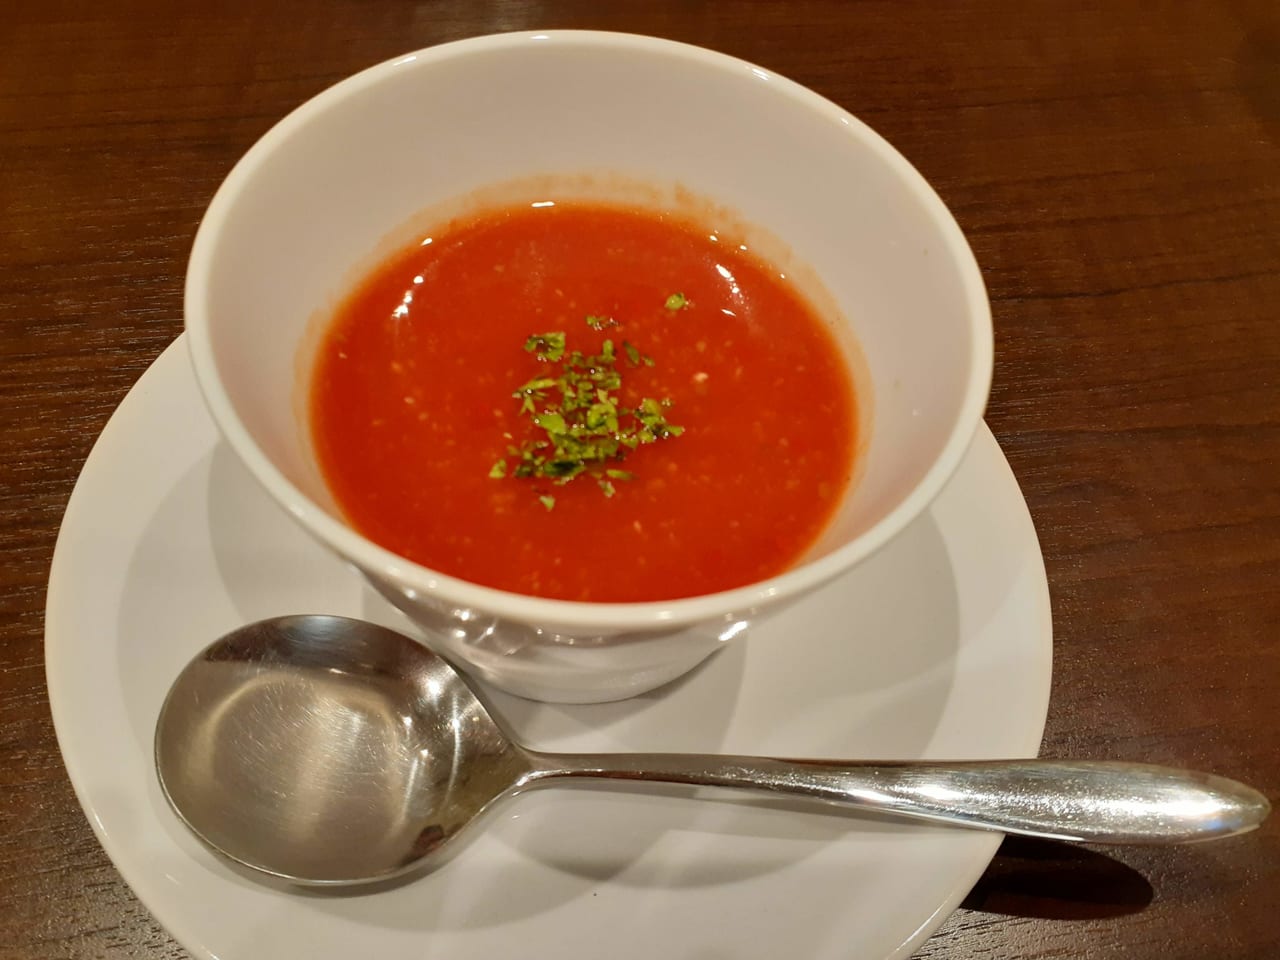 MIYOSHIさん、ランチスープです。